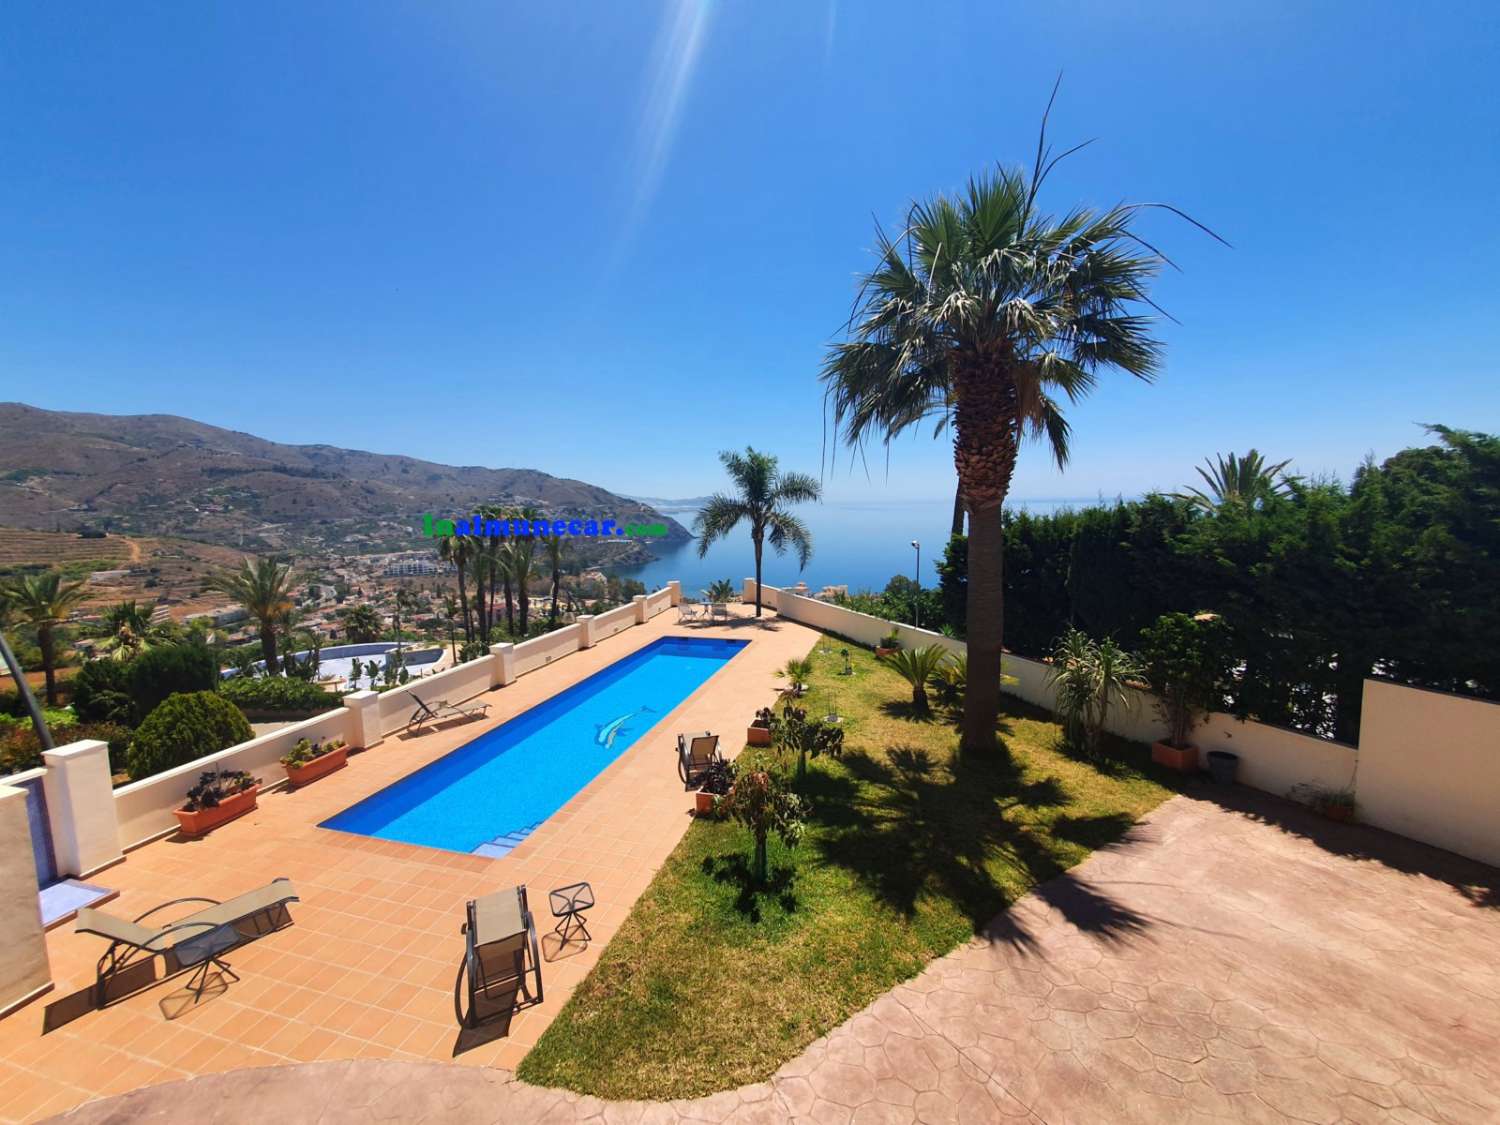 Fantastisk modern lyxvilla till salu med fantastisk utsikt över Medelhavet